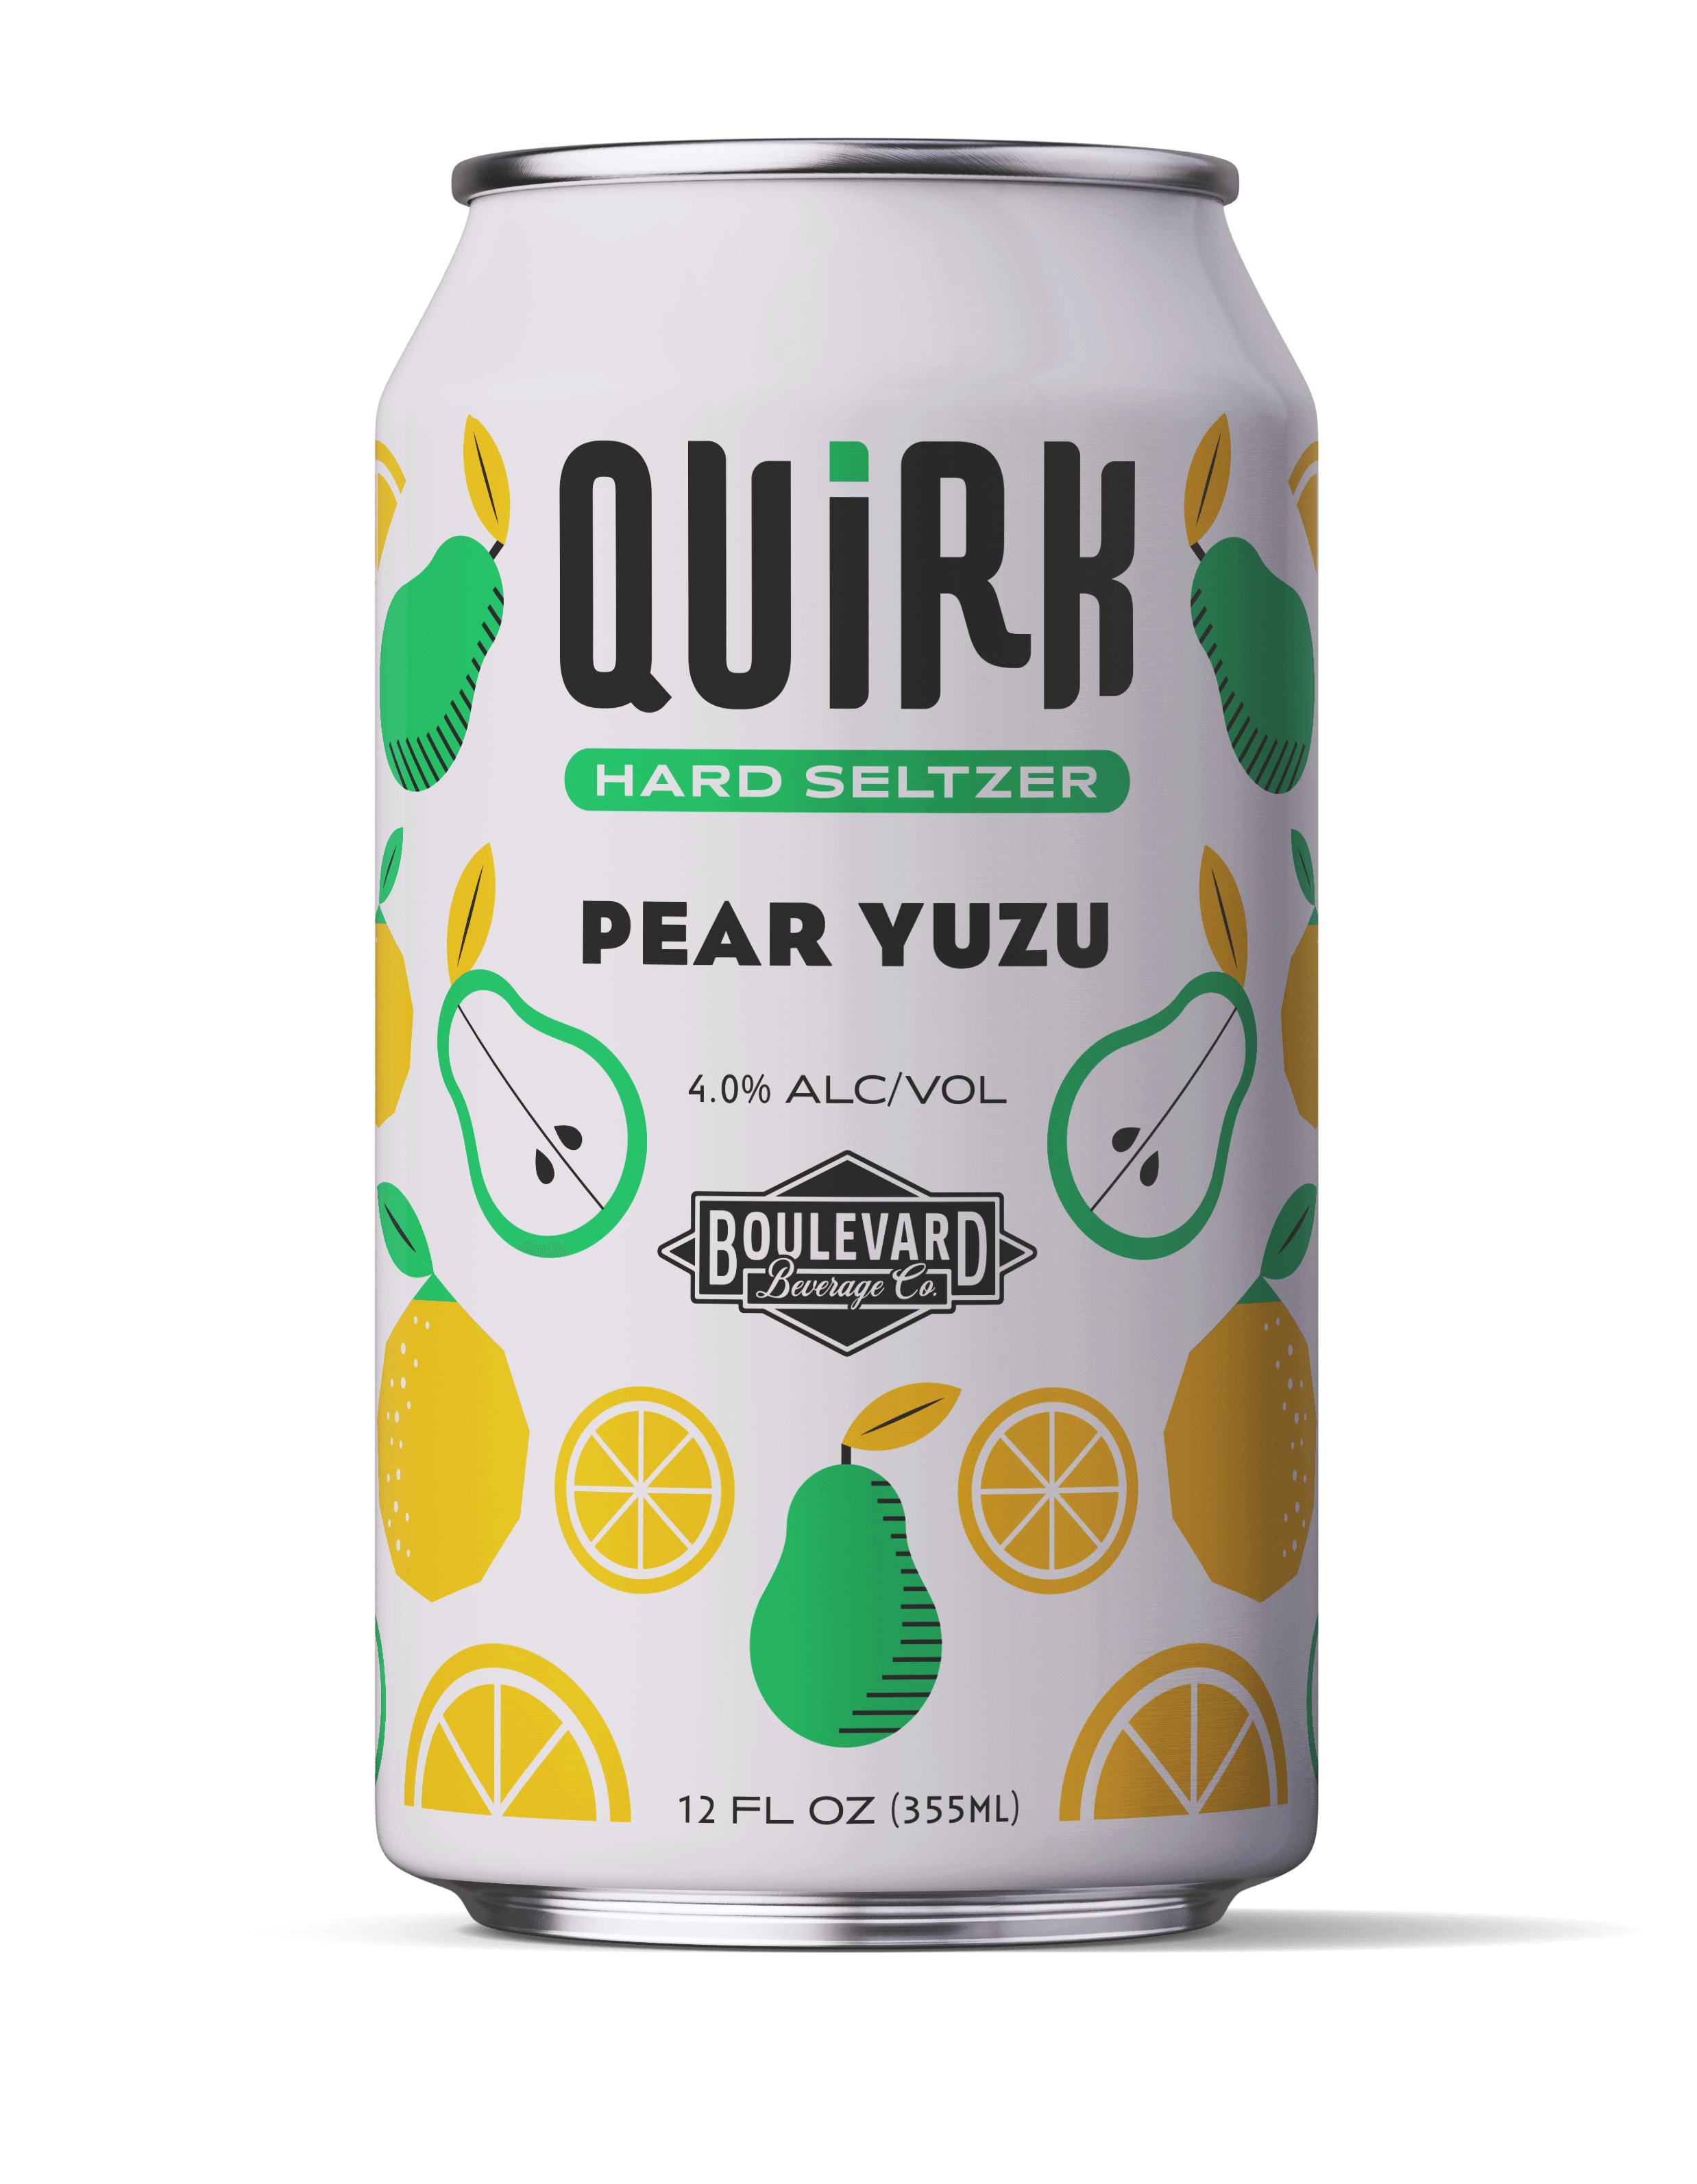 Pear Yuzu